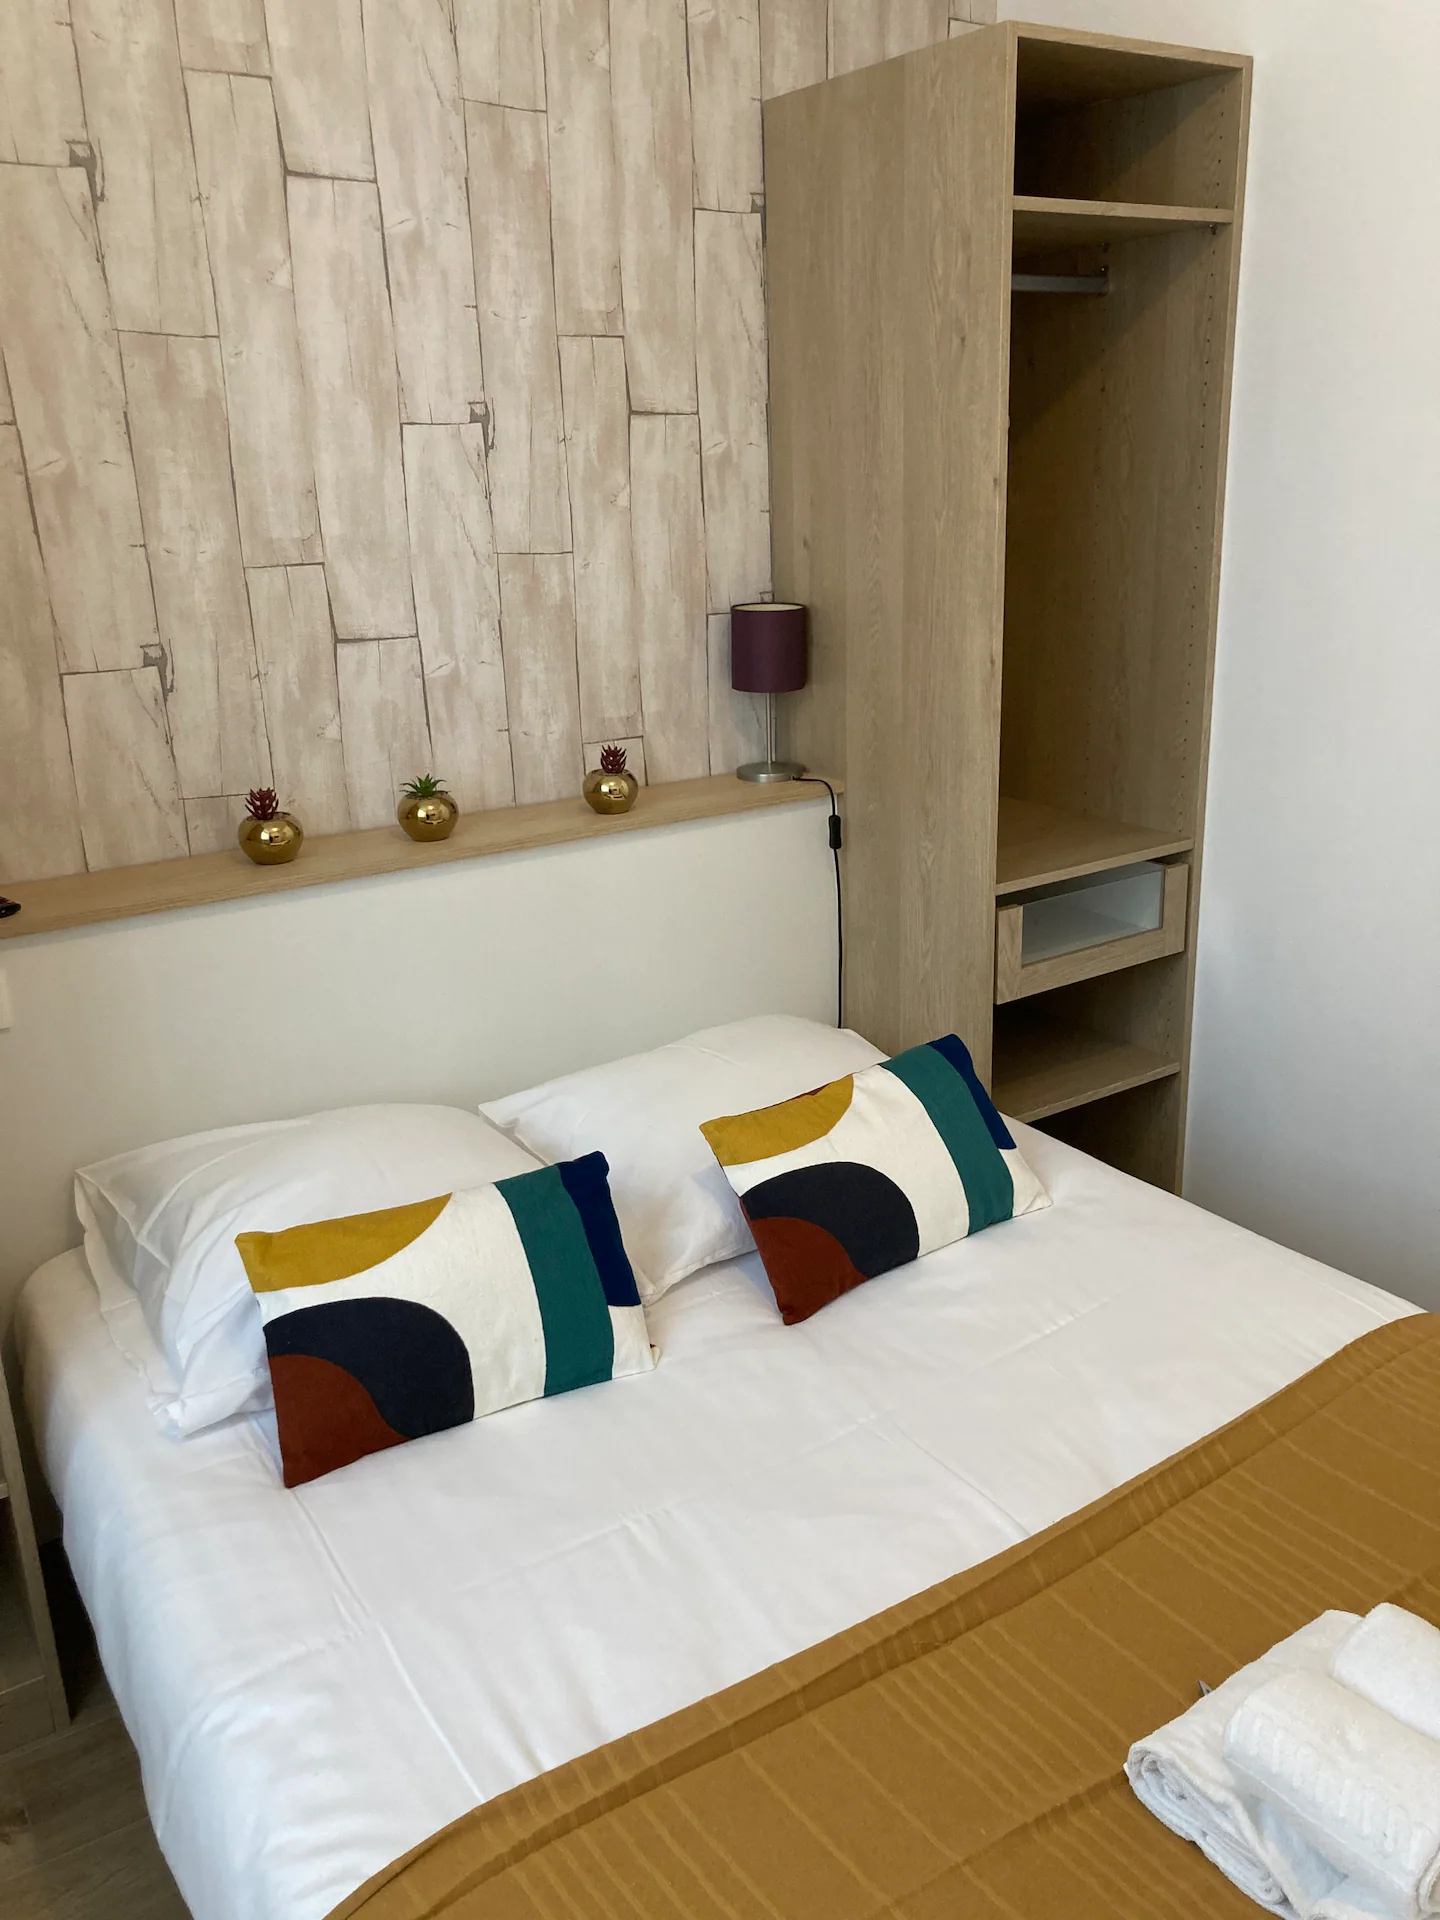 rennes-host-airbnb-conciergerie-le-delta-appartement-metro-anatole-france-chu-4